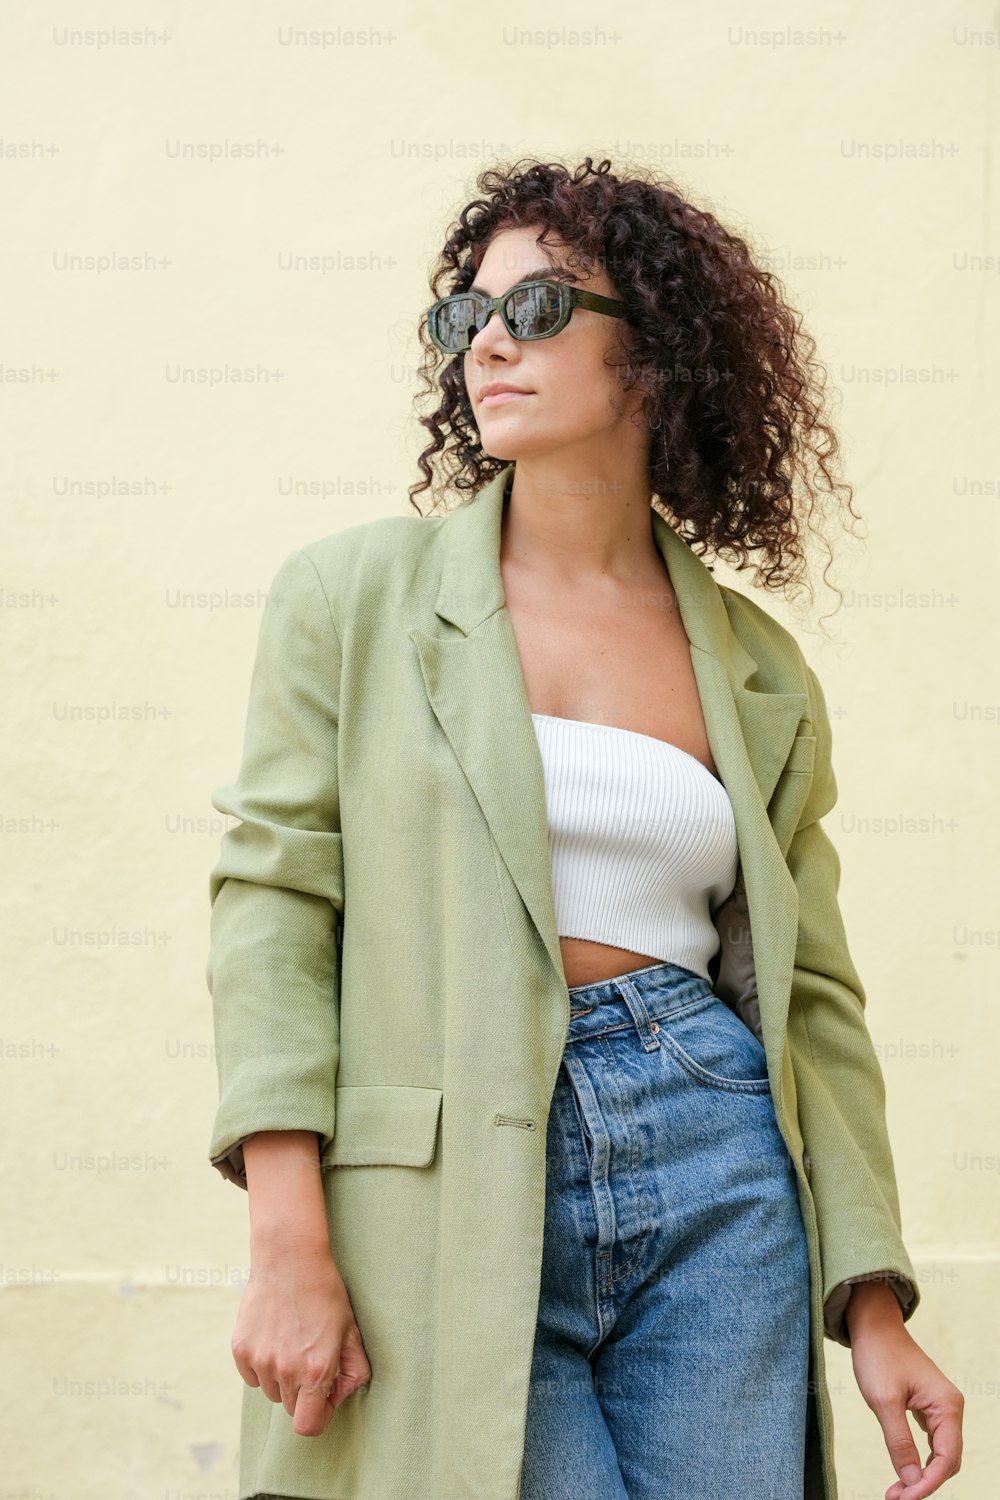 Eine Frau, die einen grünen Mantel und eine Sonnenbrille trägt